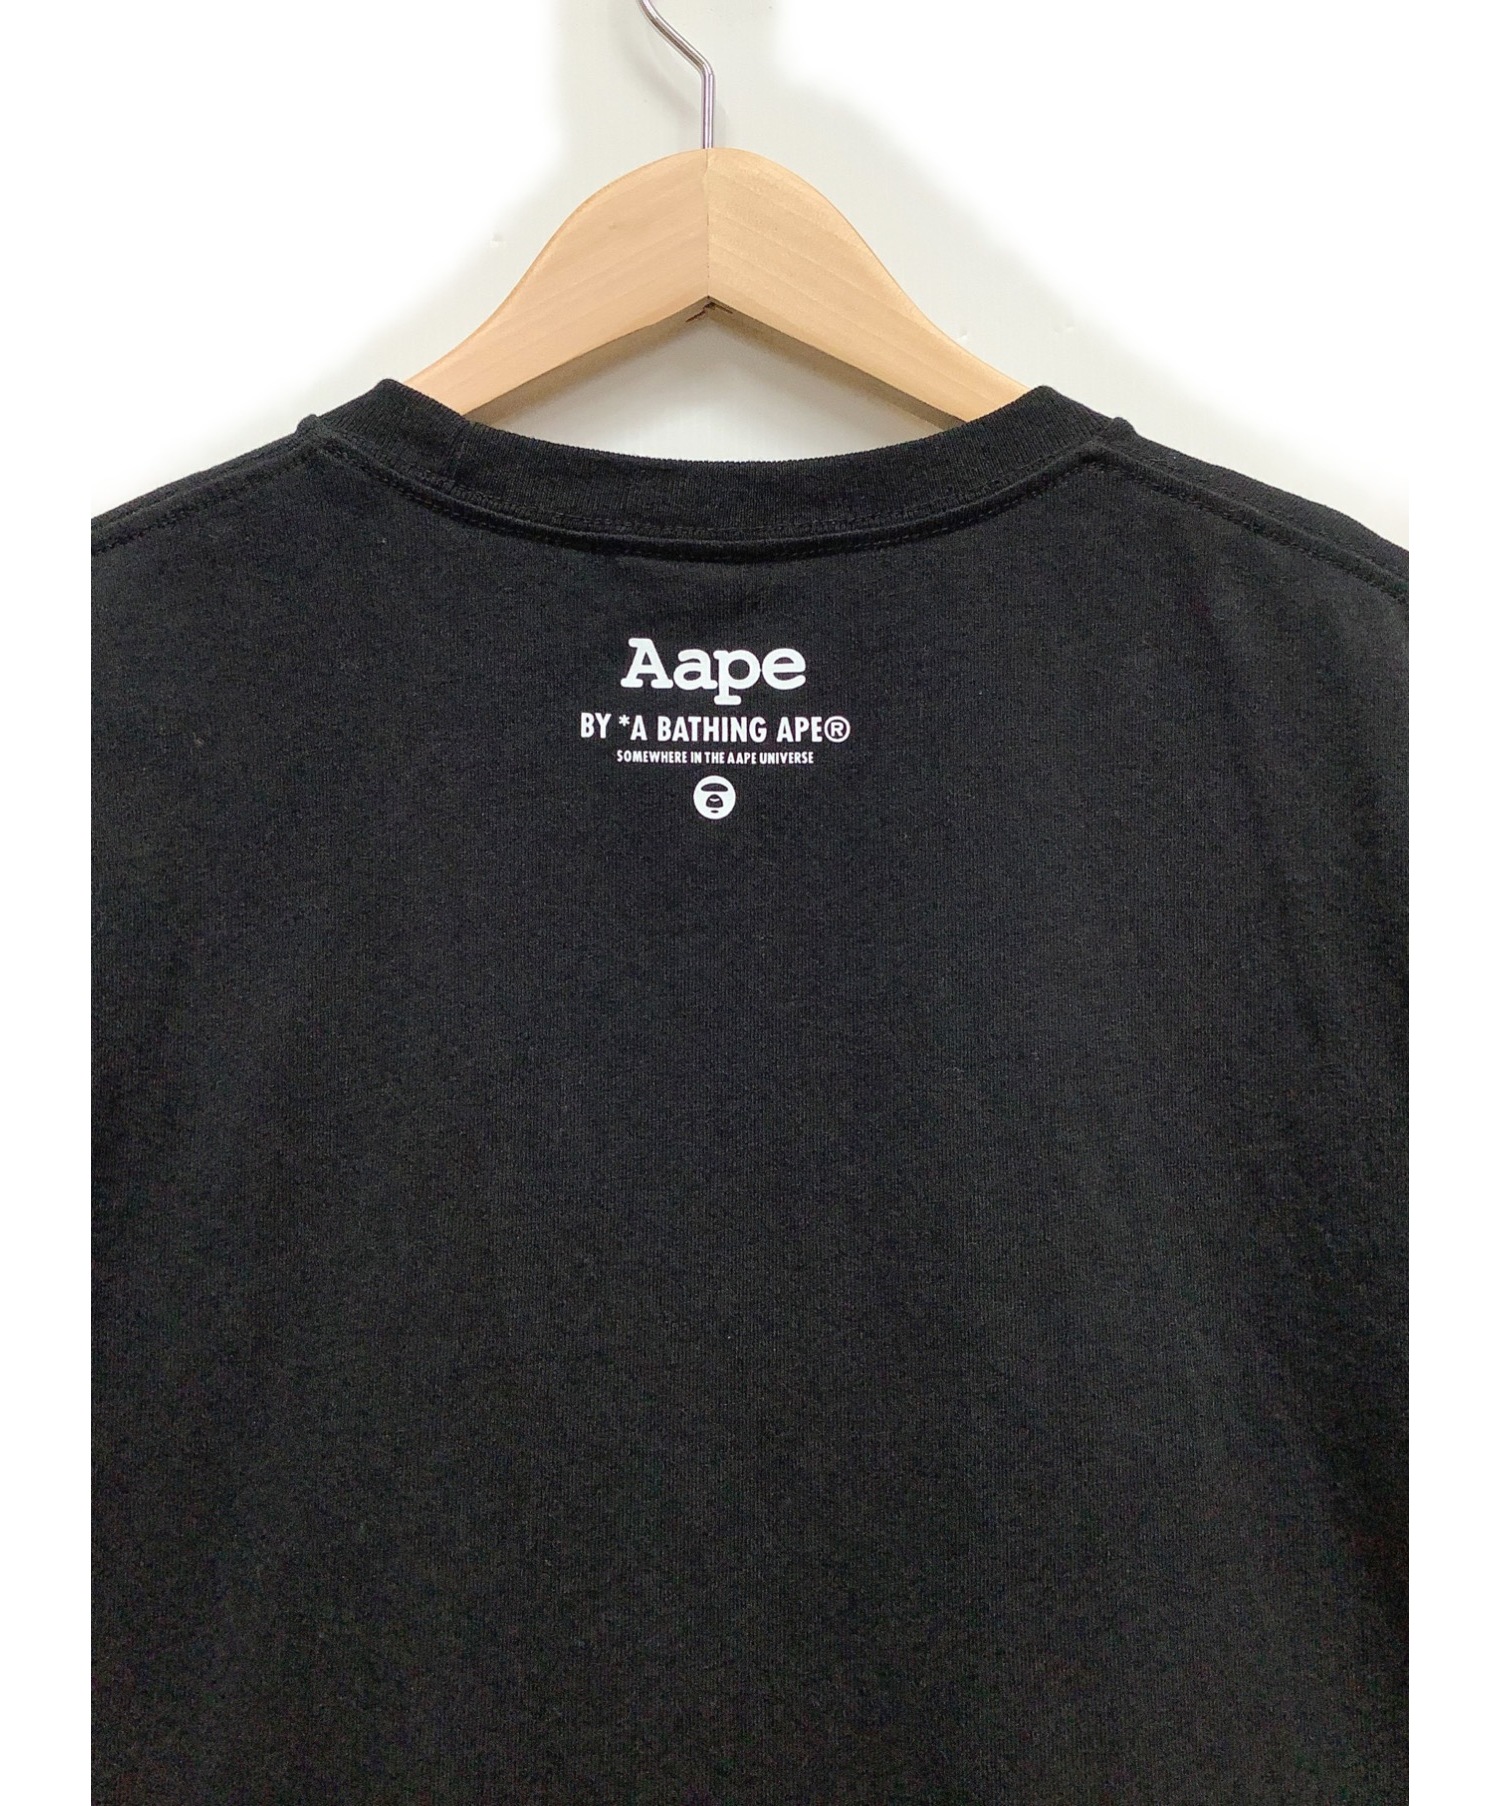 Aape BY A BATHING APE (エーエイプ バイ アベイシングエイプ) Tシャツ ブラック サイズ:L